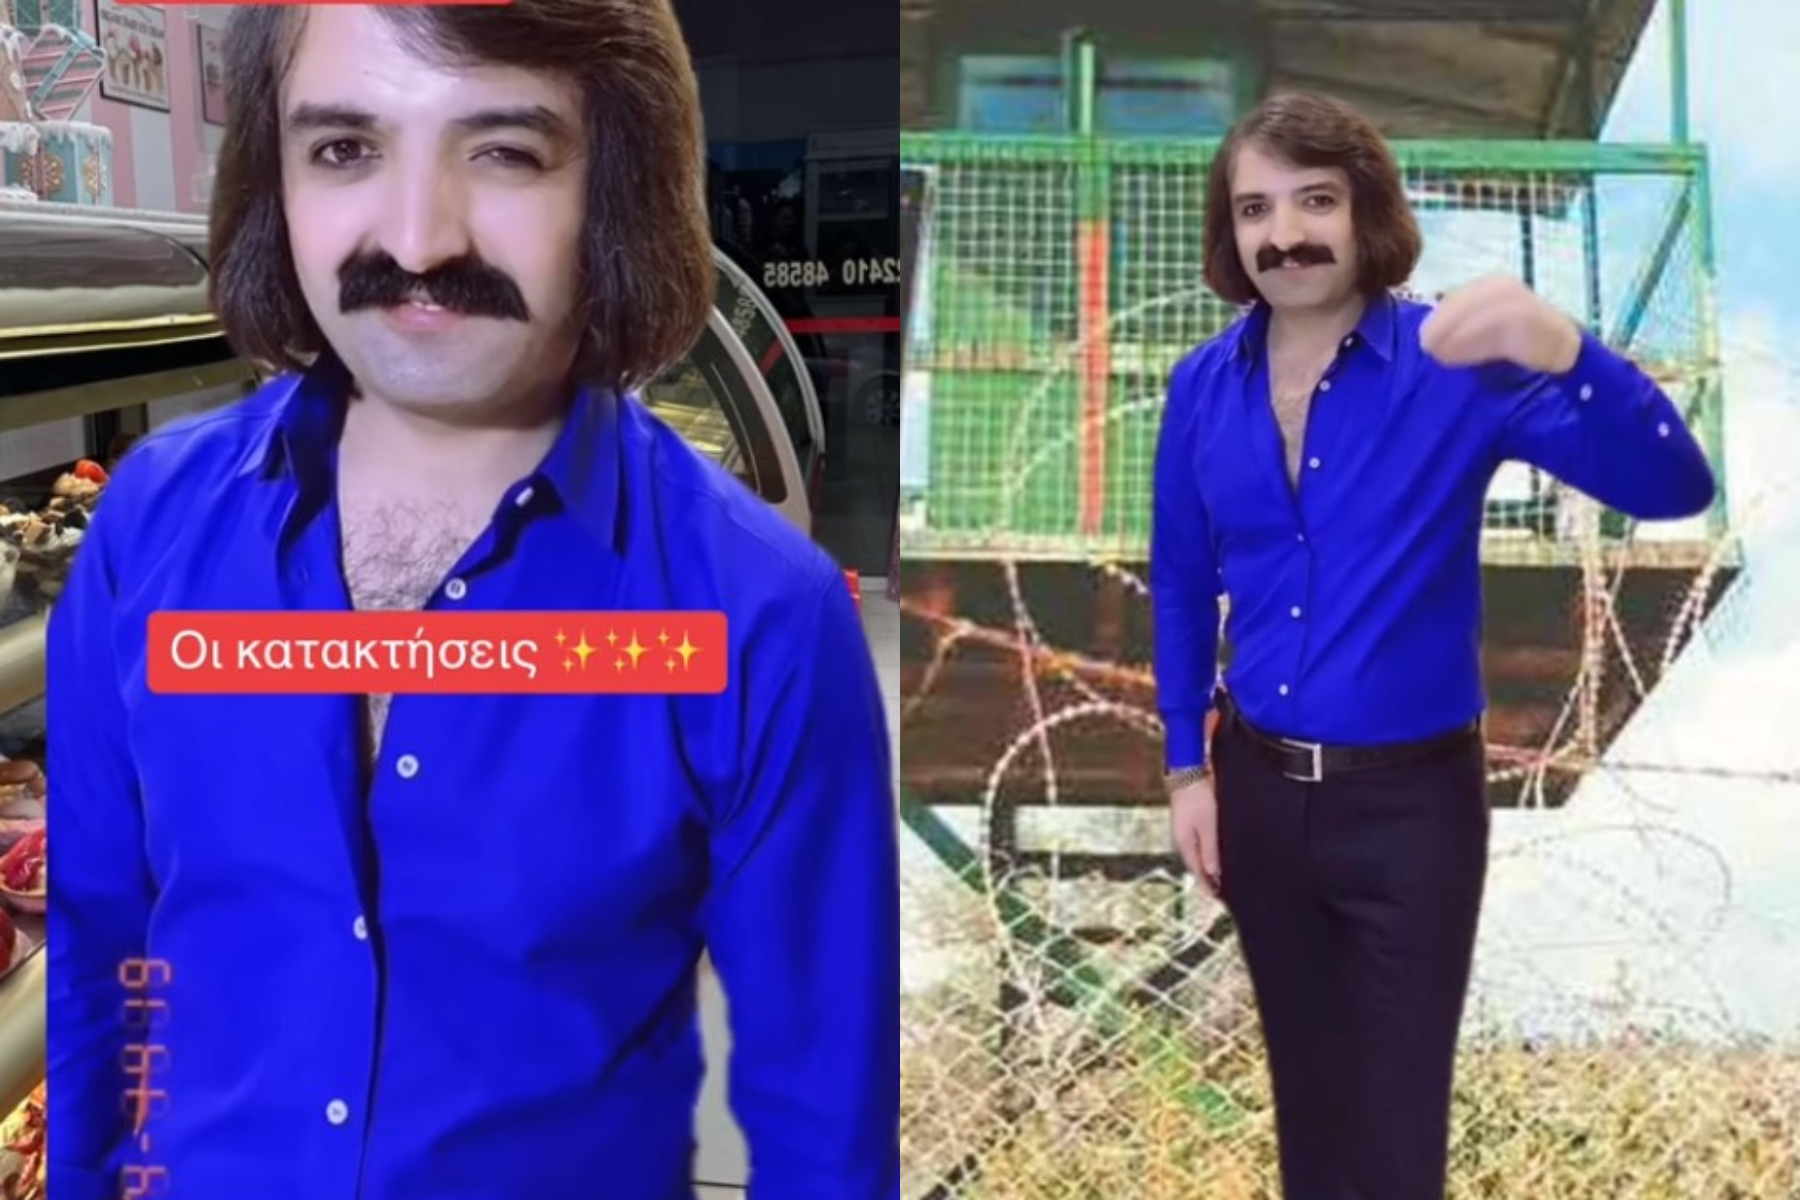 Ποιος είναι ο Τούρκος με το 70's look που έχει γίνει viral στο TikTok;